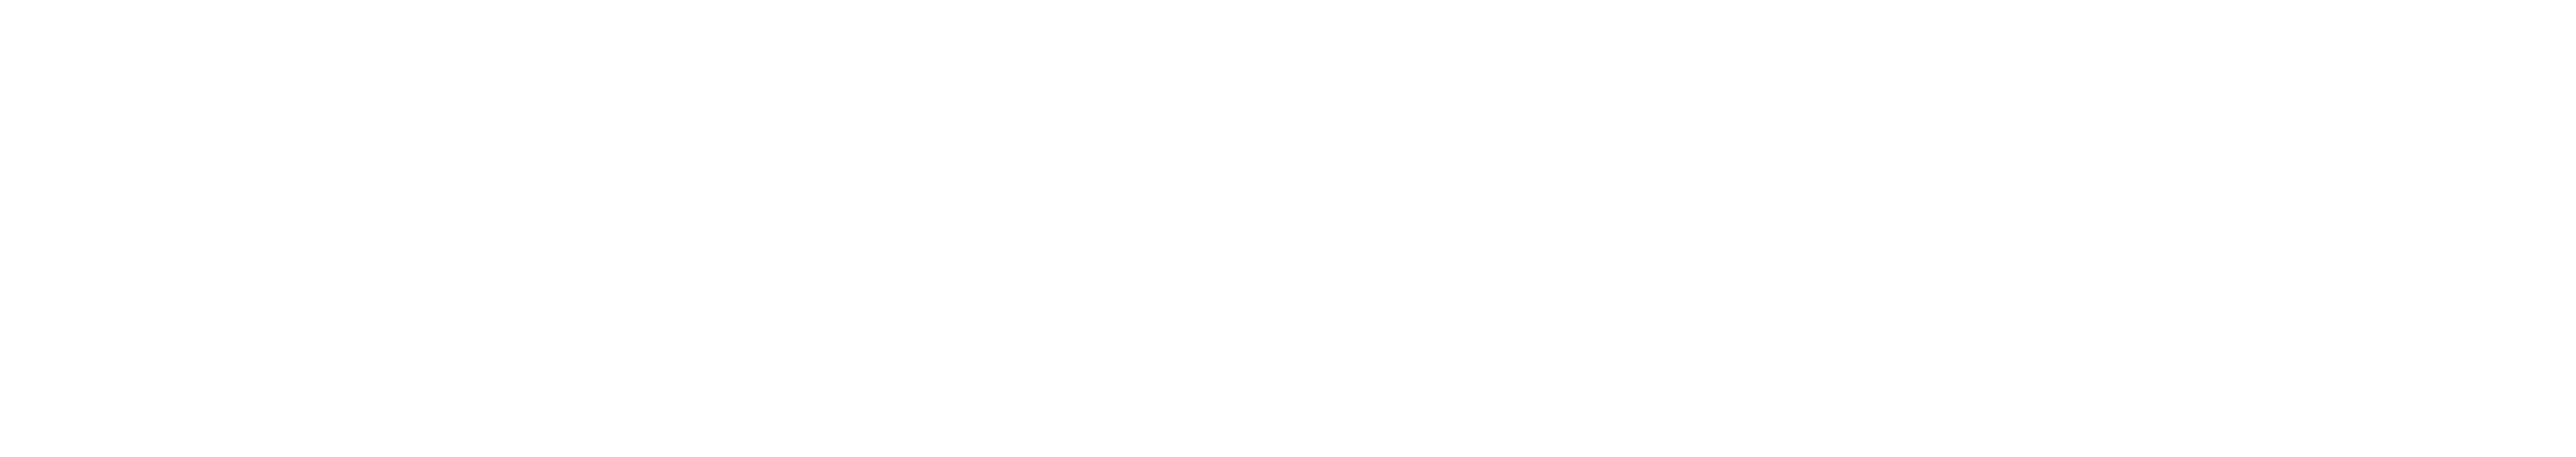 Pompier logo, valkoinen